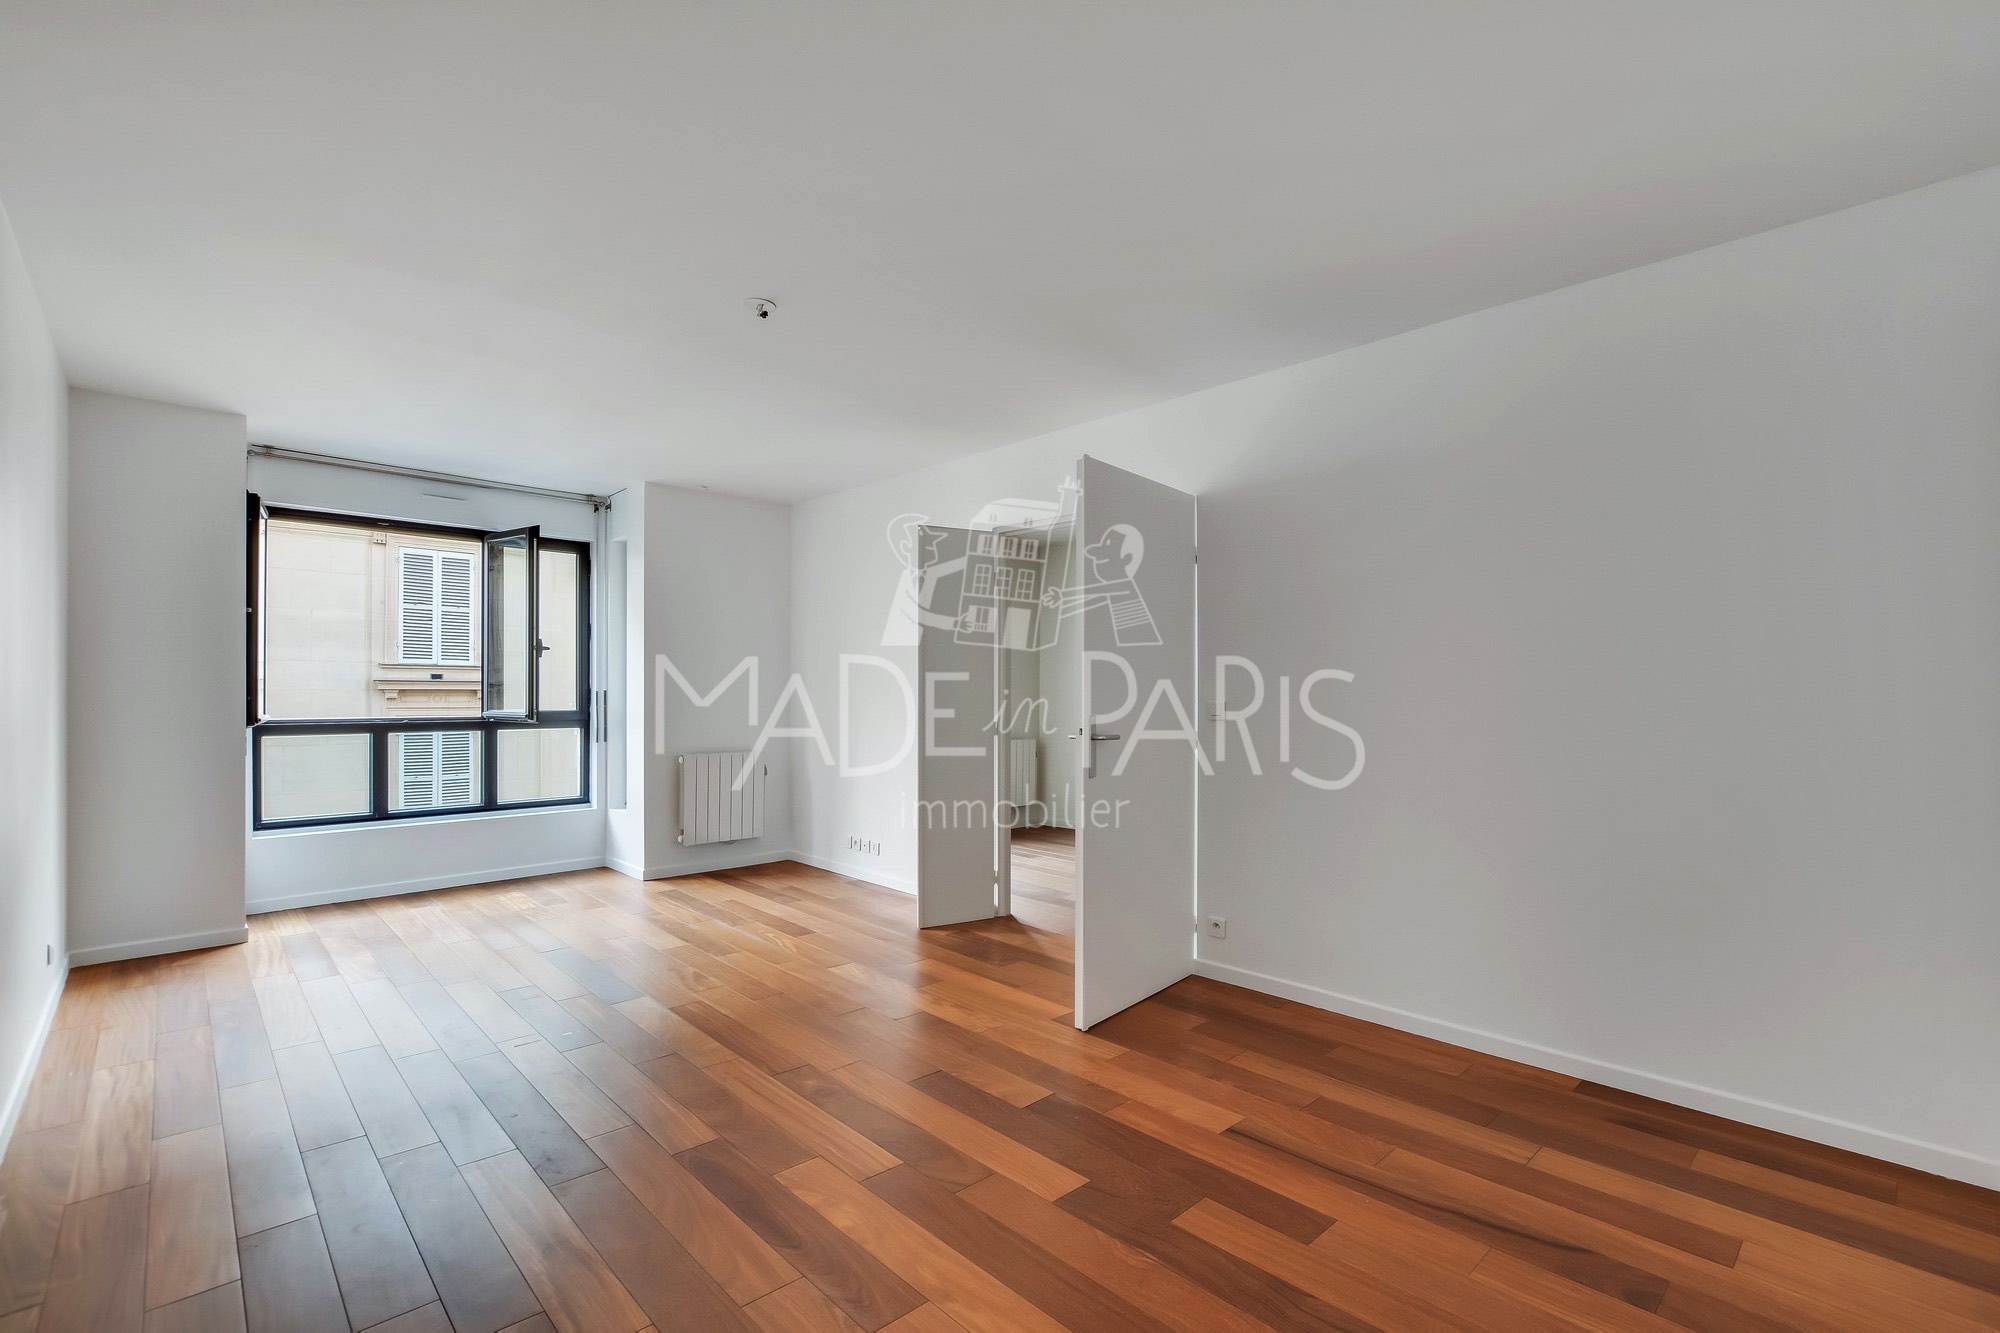 Made in Paris Immobilier - Photo du Séjour d'un appartement en location composé 3 Pièces et situé à Paris - 75017